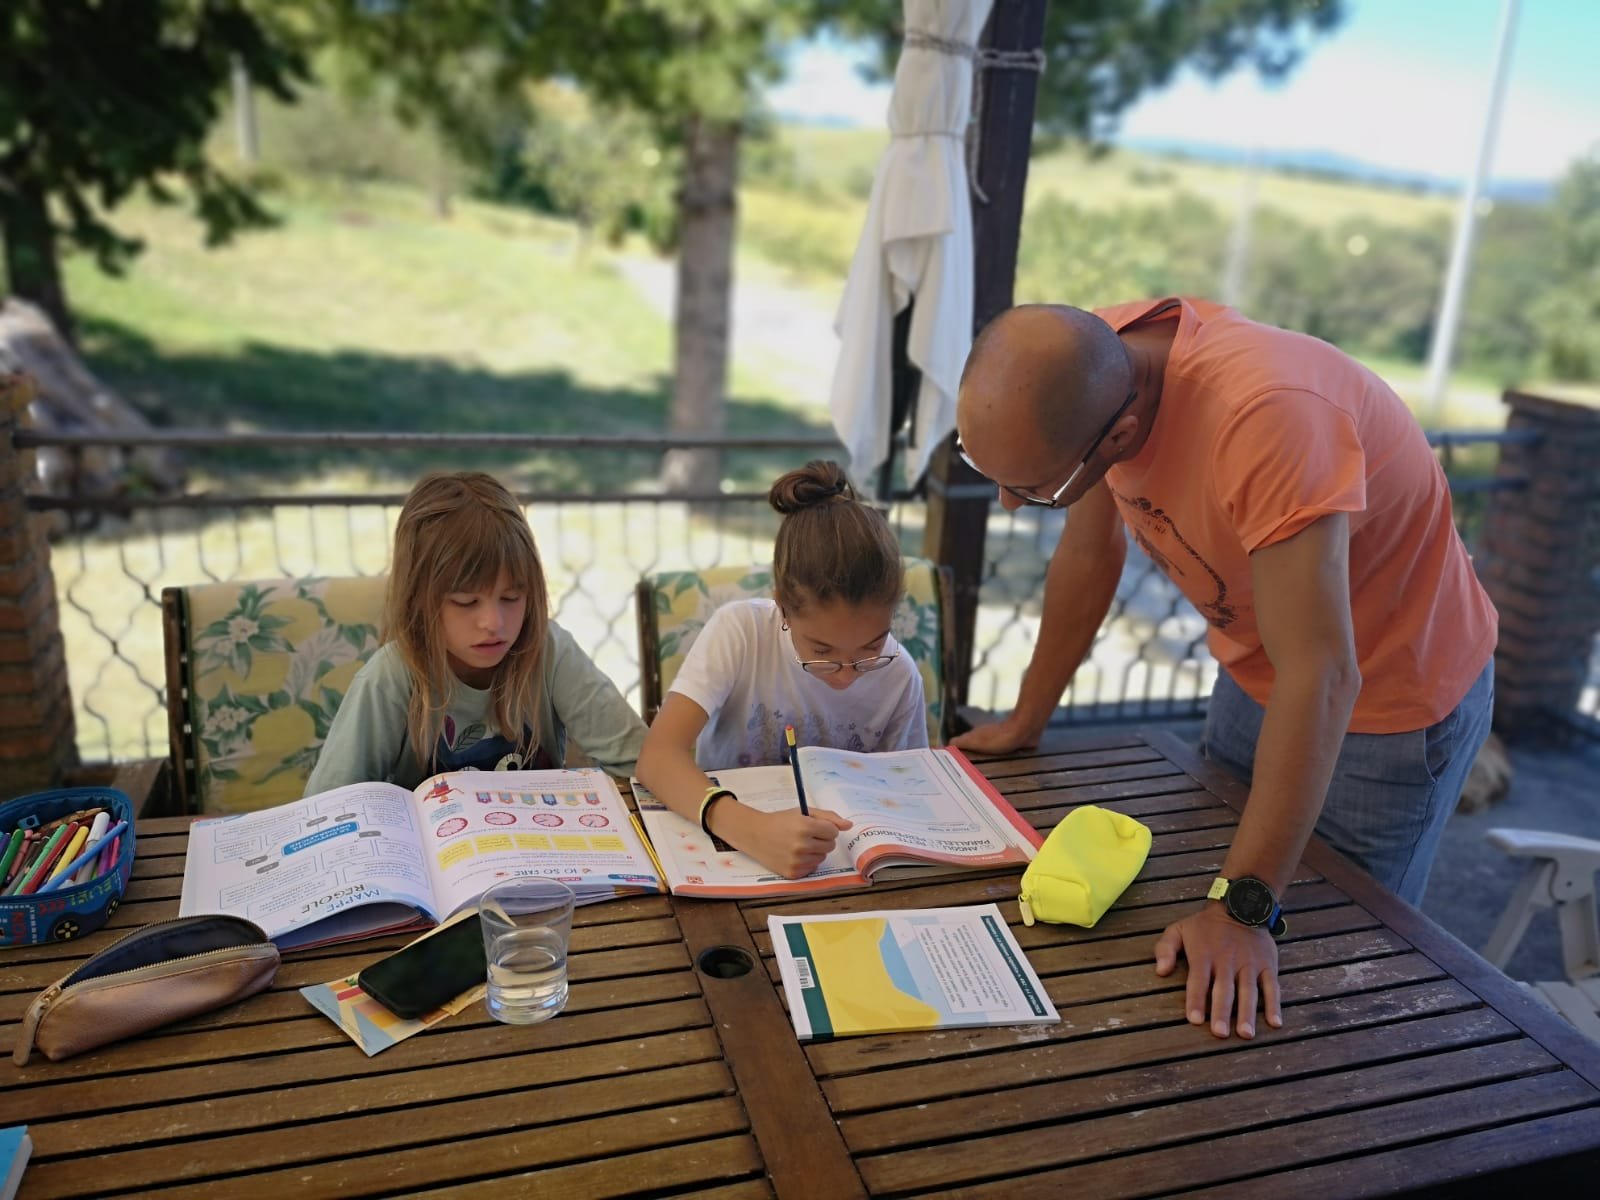 Compiti delle vacanze svolti da due bambine e da un adulto